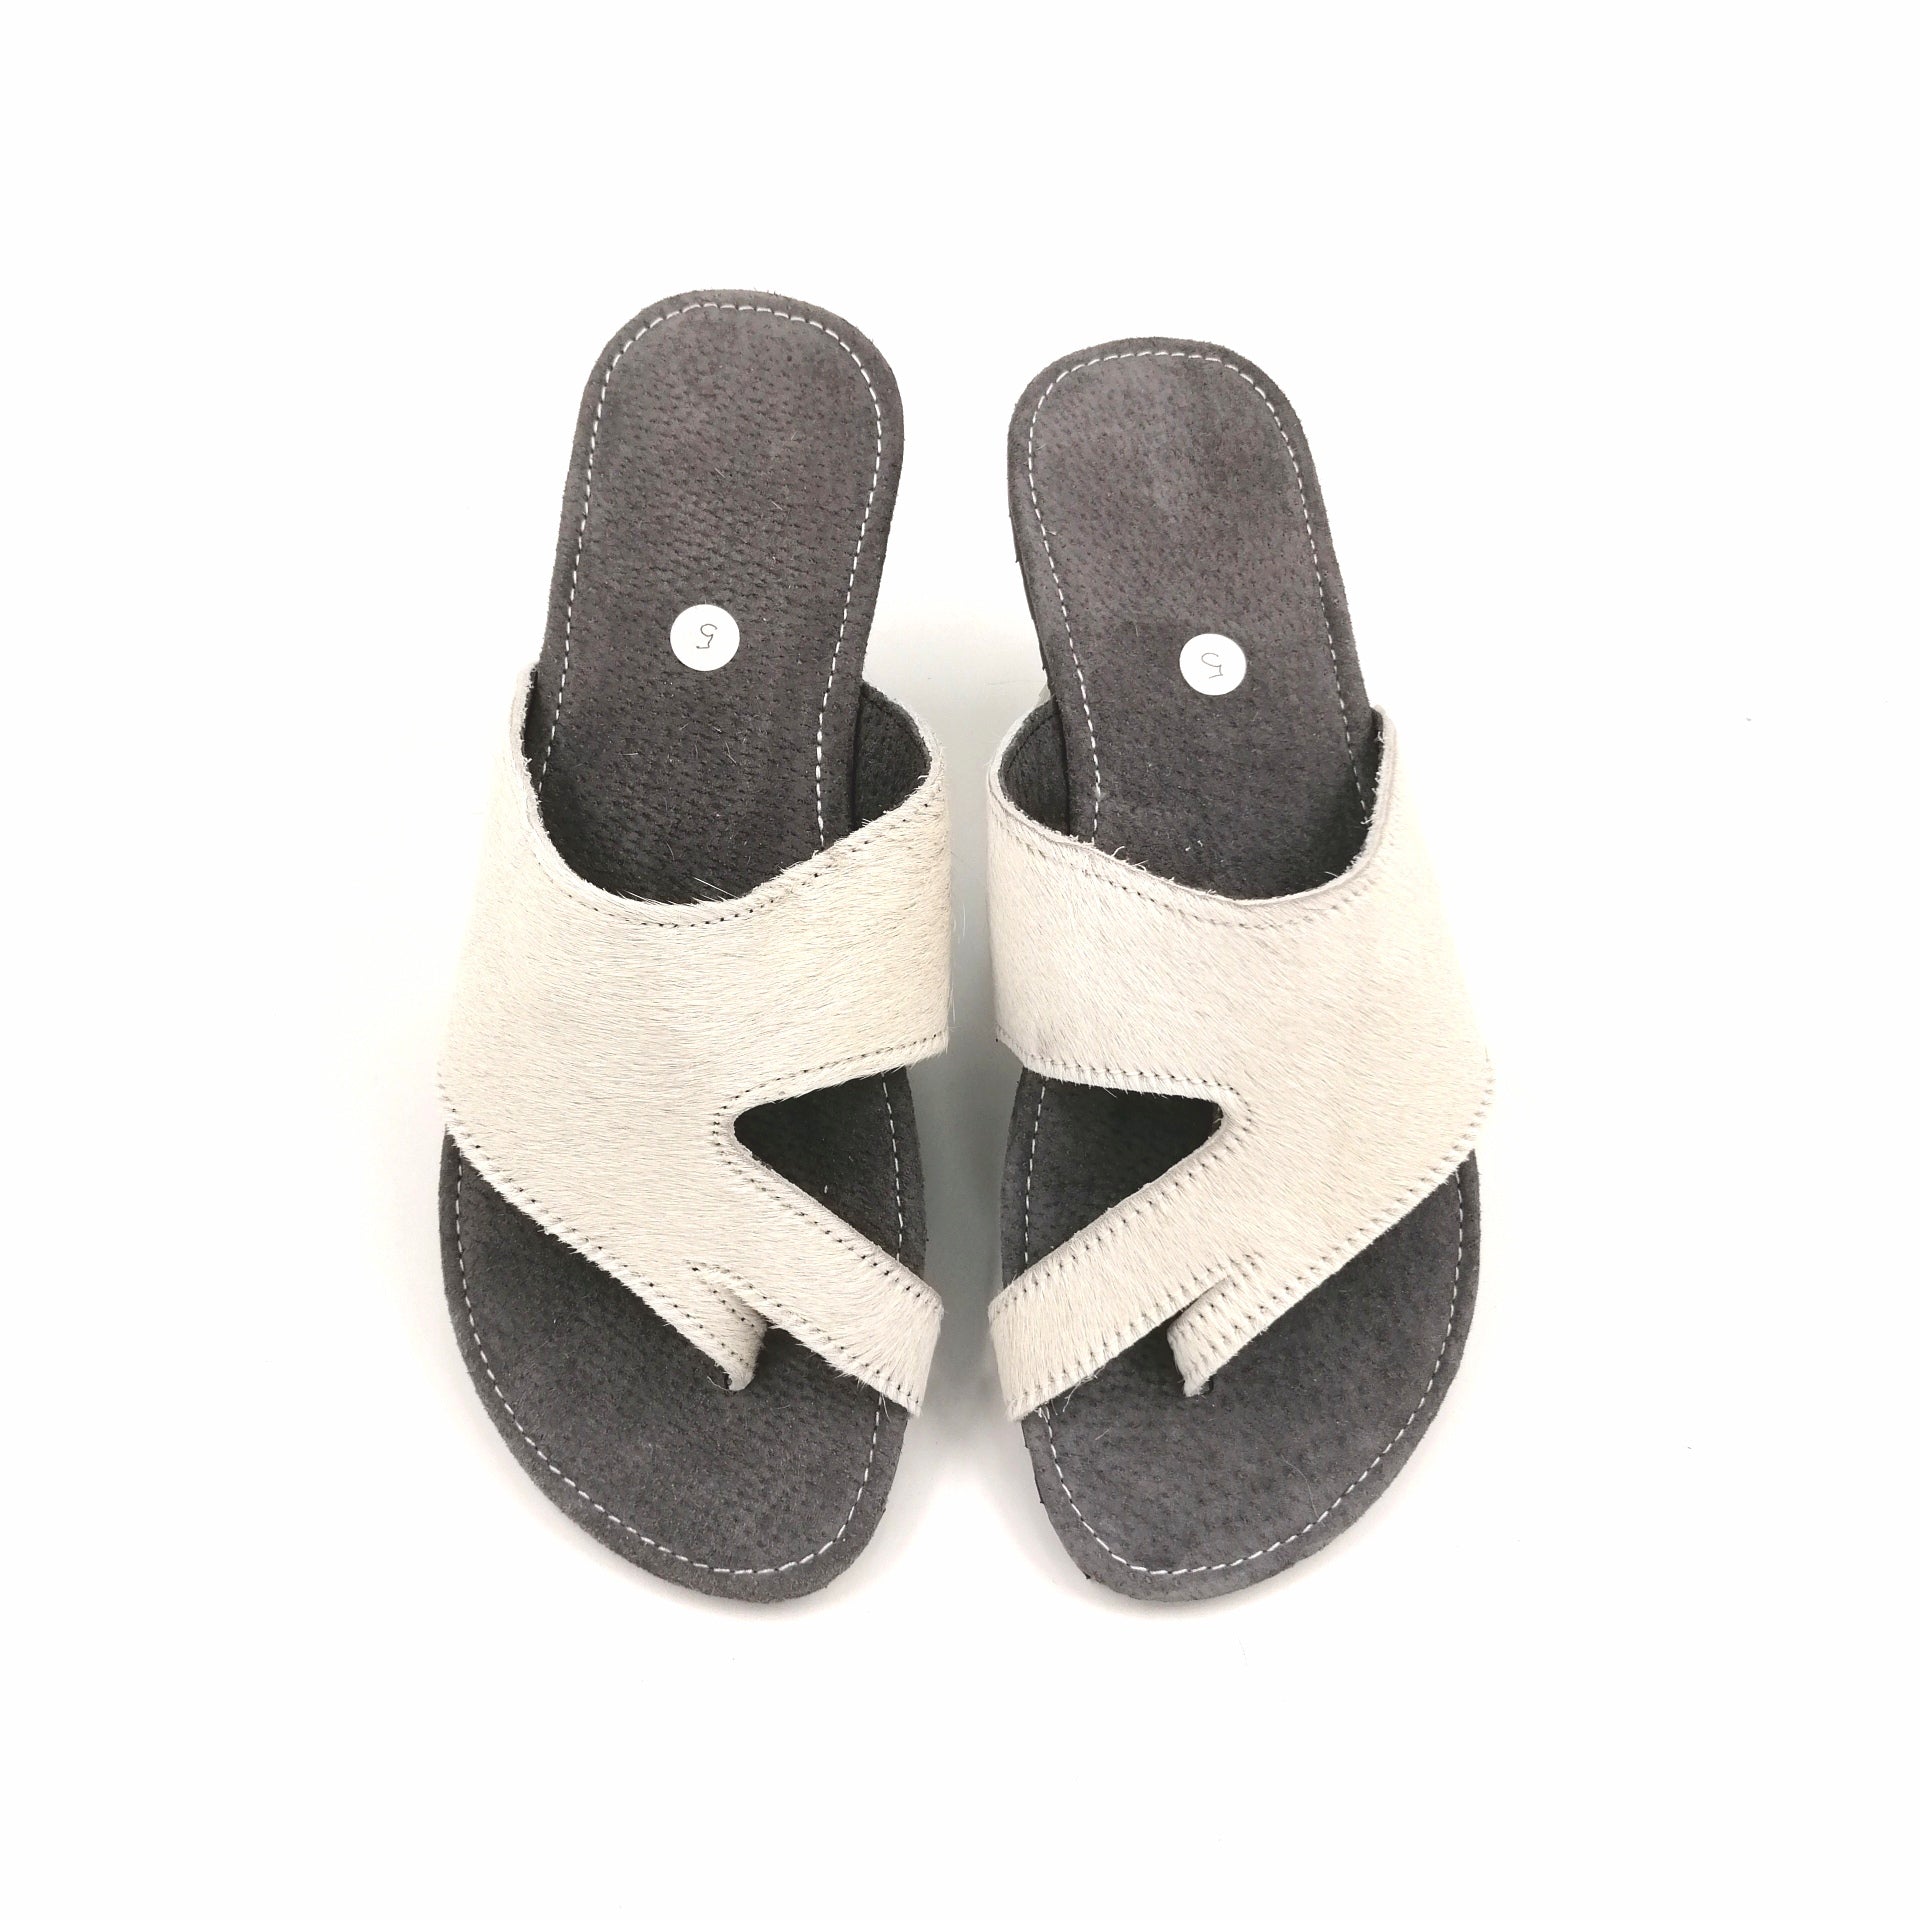 Sandals - SC20-SAN05-20 - Size 5